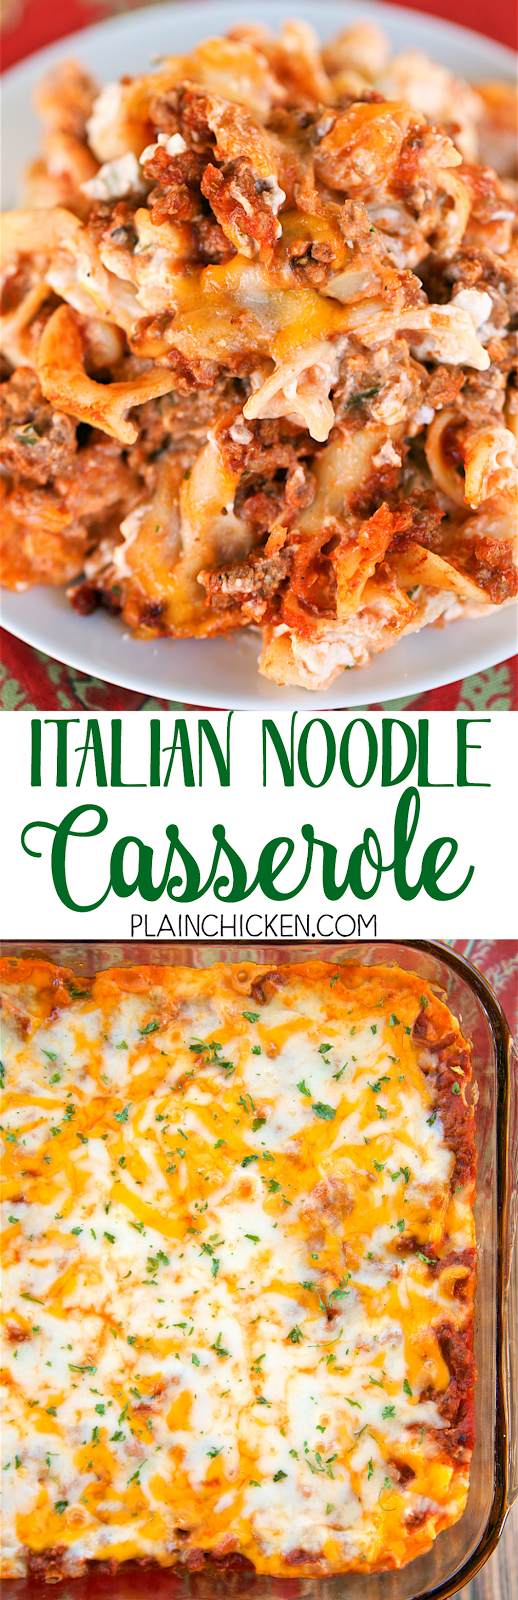 Italian Noodle Casserole | Plain Chicken®